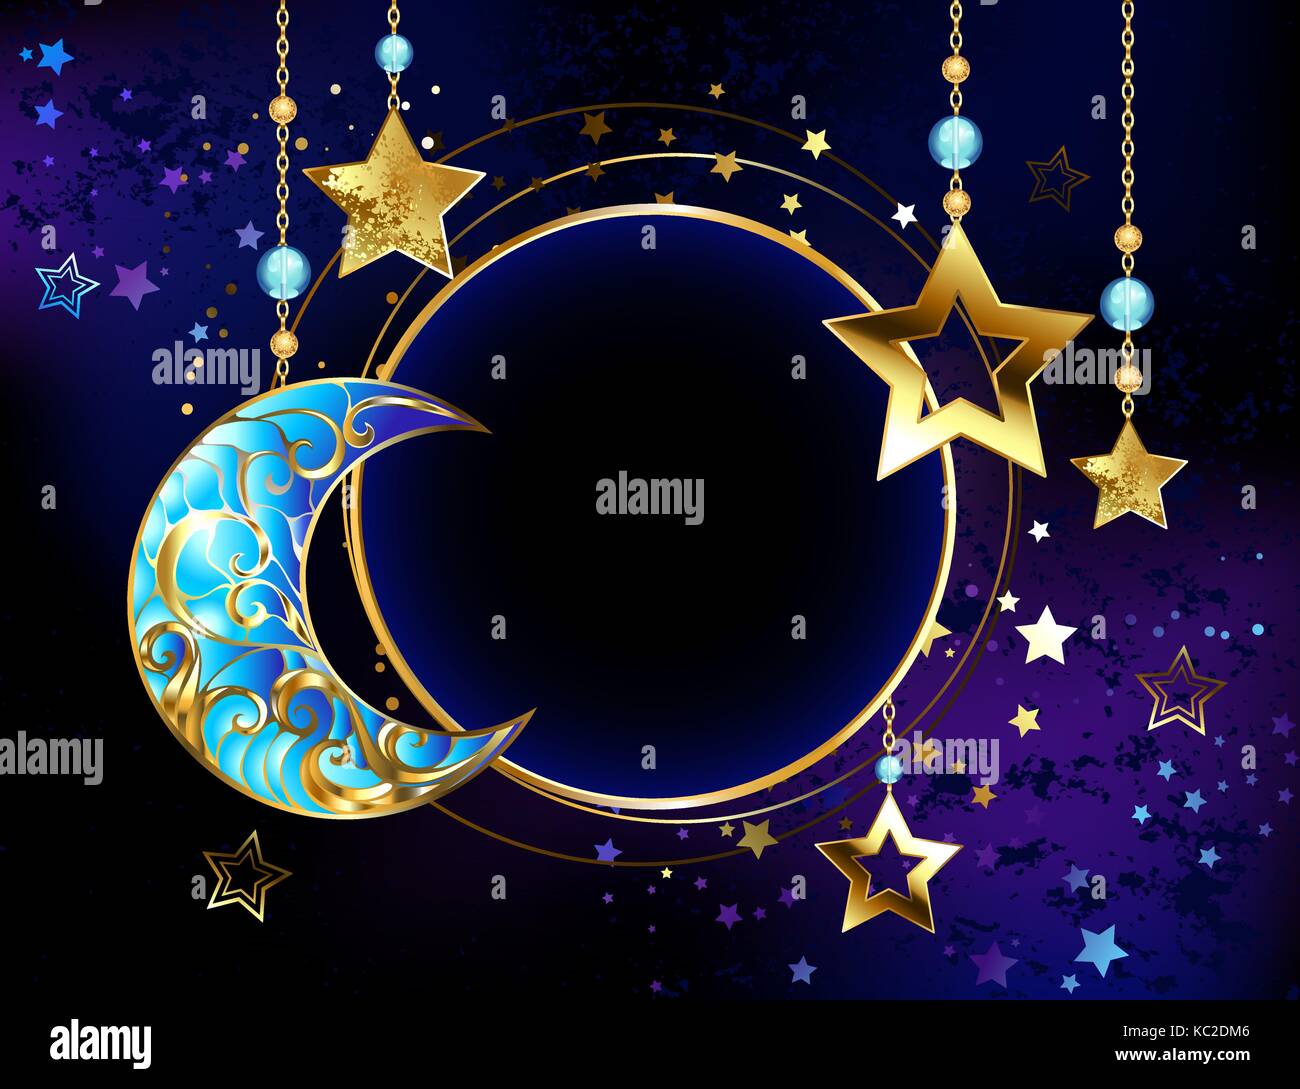 Runde Banner mit einem Juwel Crescent, und goldenen Sternen auf Gold Ketten auf eine leuchtende kosmischen Hintergrund. Golden Star. Schmuck Crescent. Stock Vektor